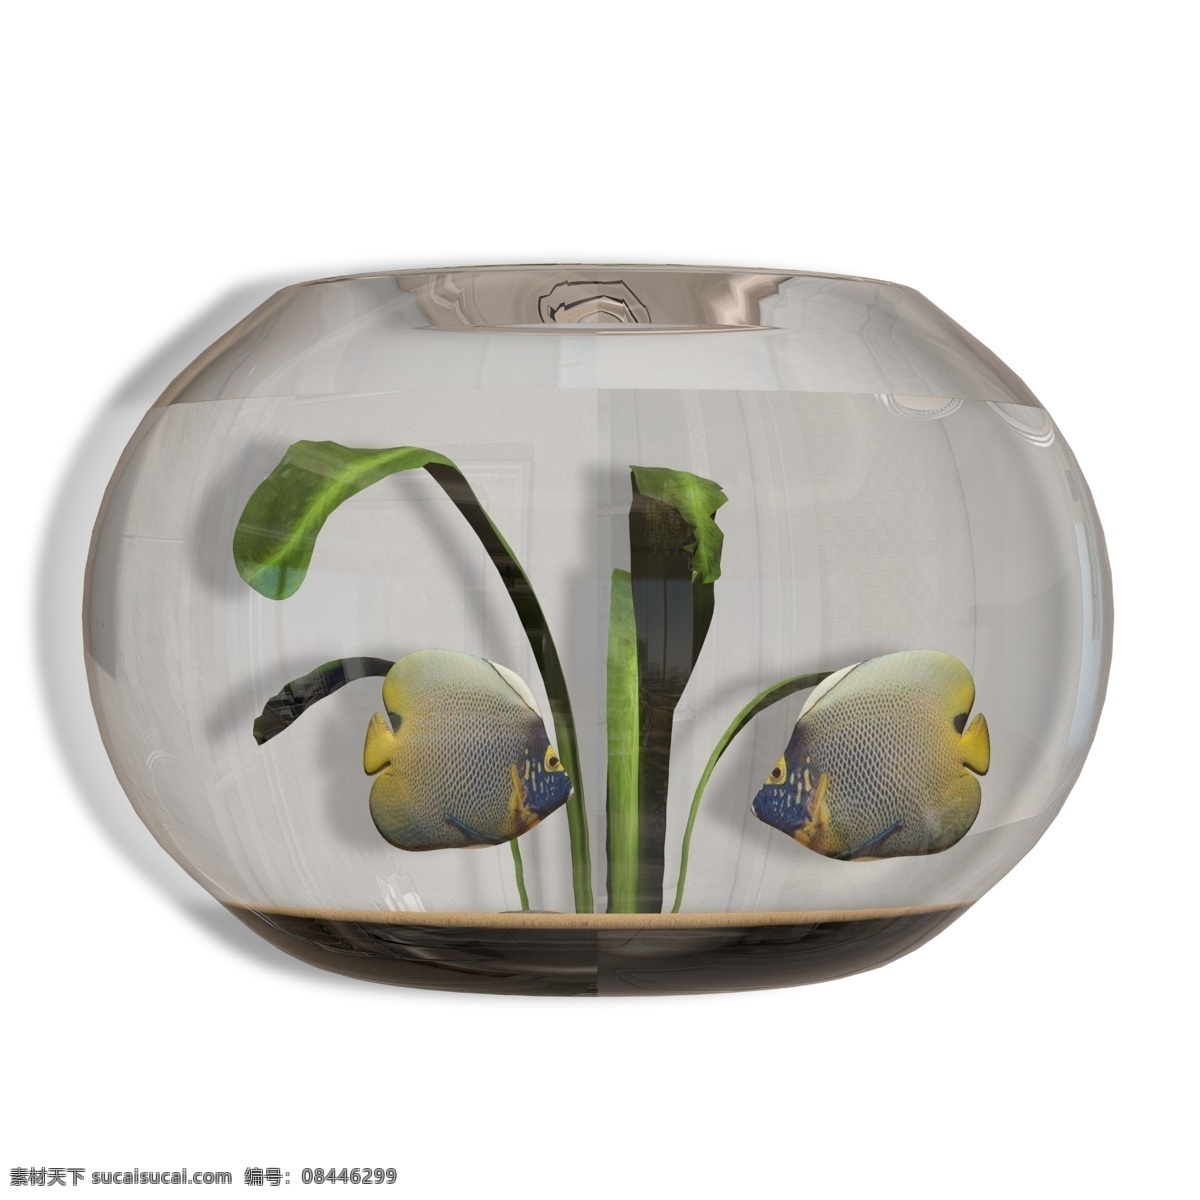 家居装饰 圆形 鱼缸 圆形鱼缸 玻璃鱼缸 鱼 热带鱼 观赏鱼 养鱼 鱼类 玻璃缸 玻璃 玻璃制品